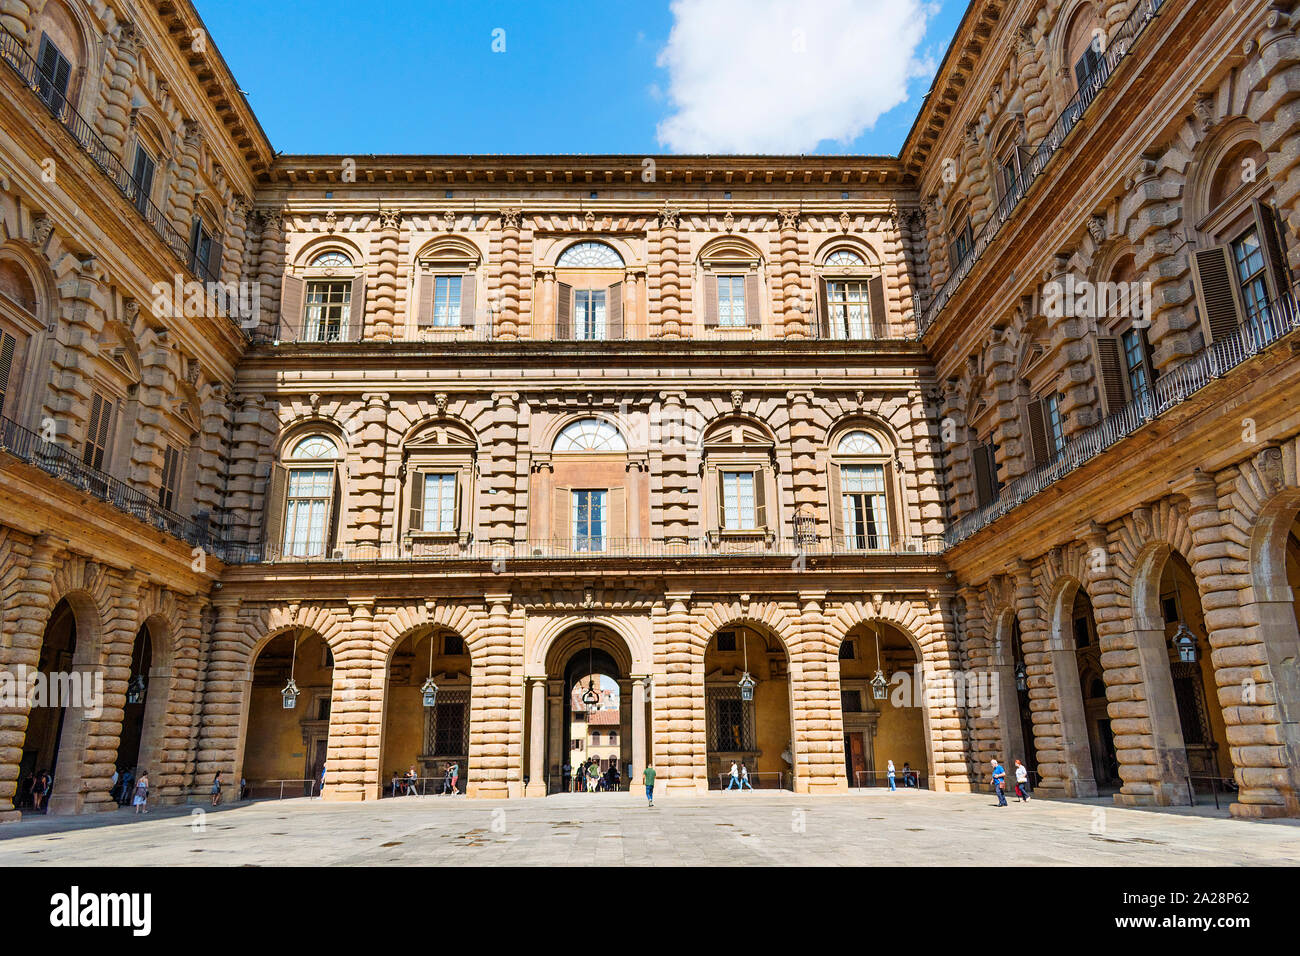 La cour du palais Pitti Florence, le palais Pitti de Florence, Toscane, Italie. Banque D'Images